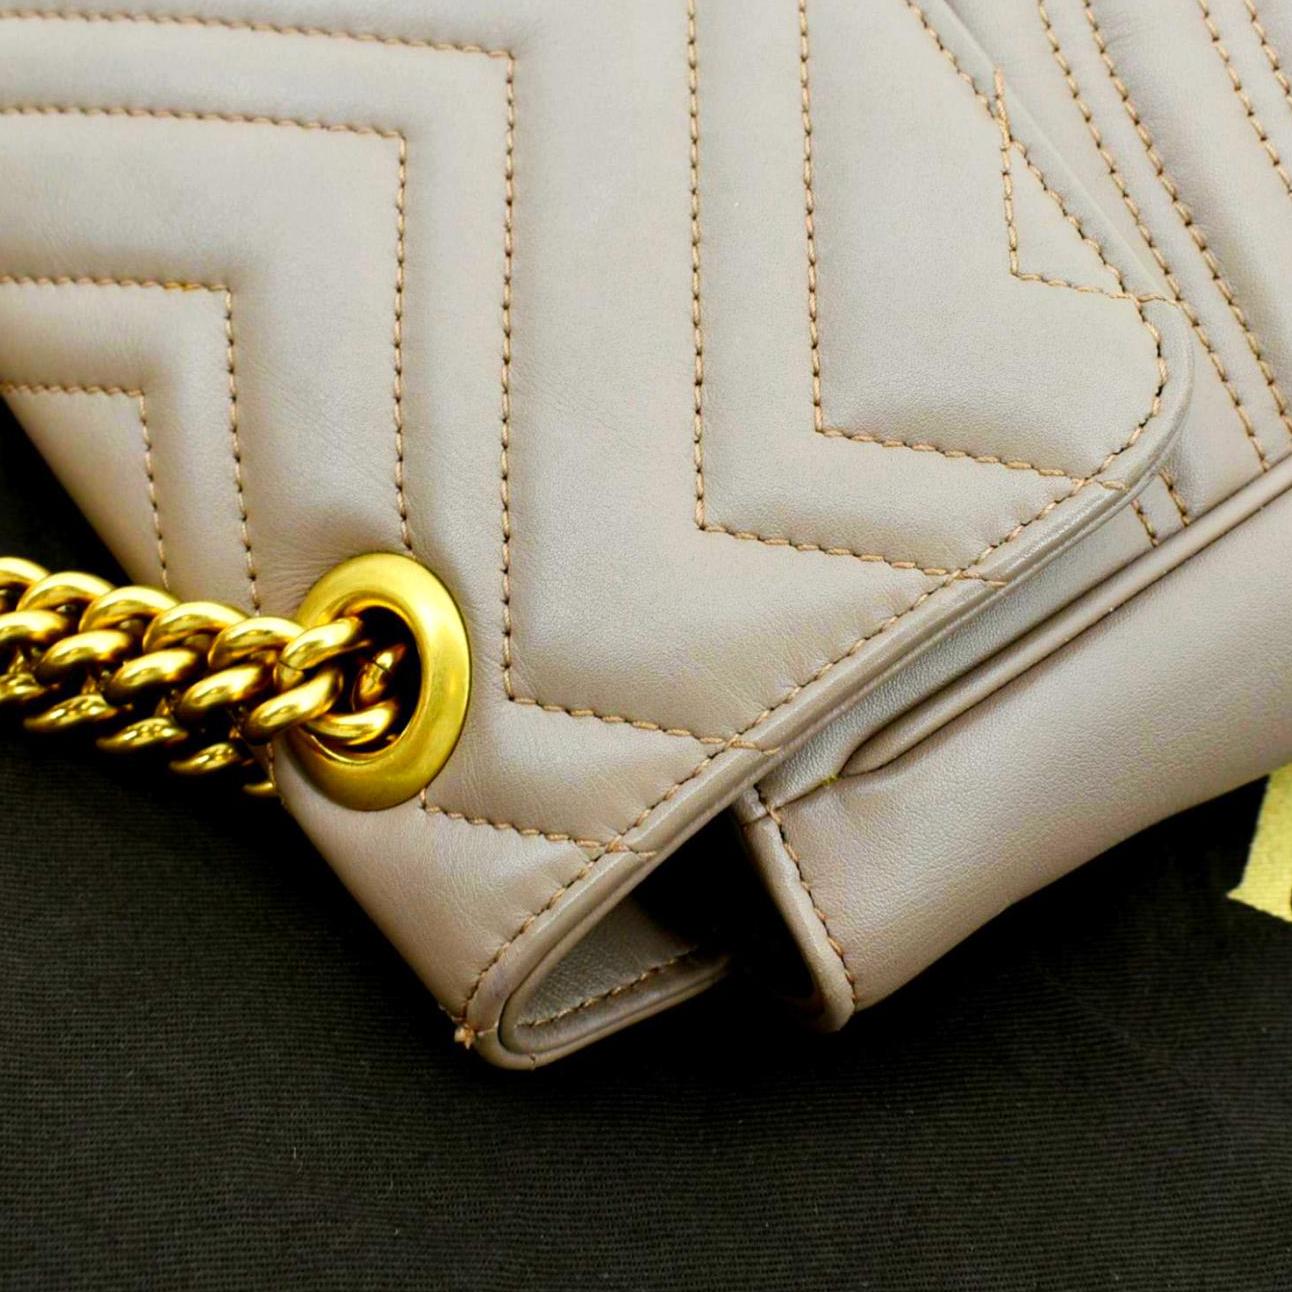 Gucci Marmont Matelasse Shoulder Bag GG Metallic Medium Gold/Pink